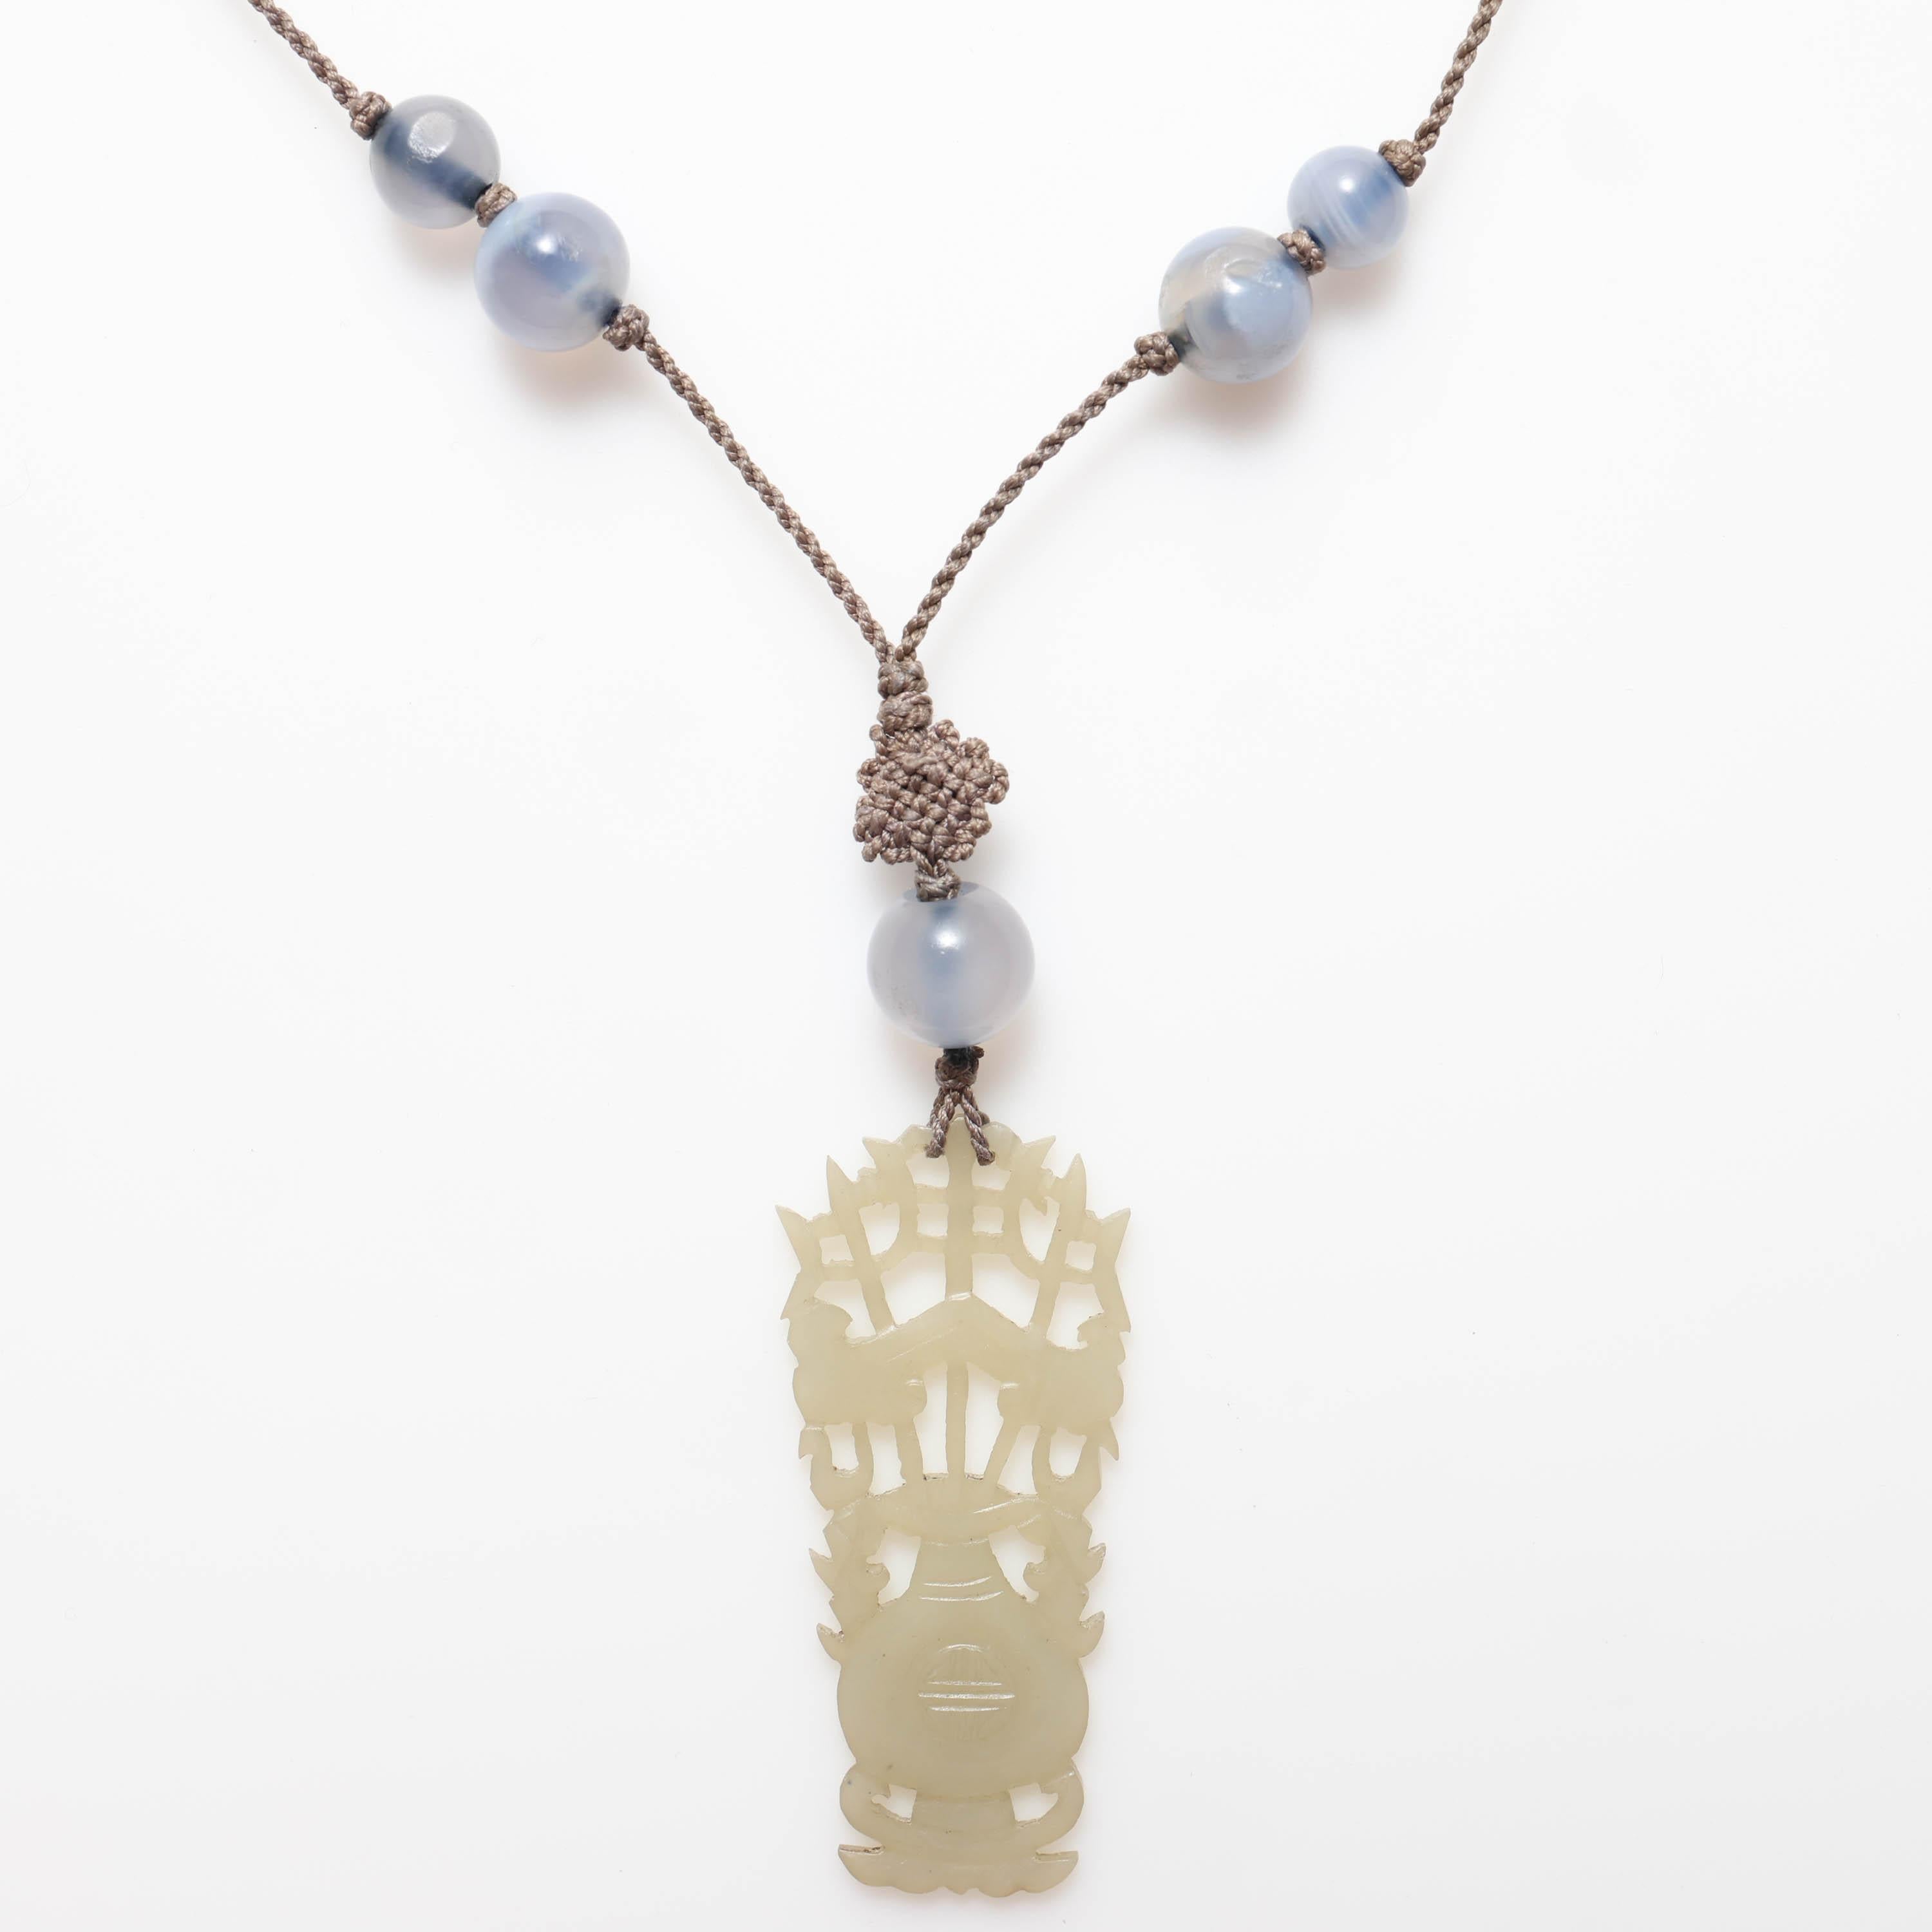 Dies ist eine seltene und völlig original geschnitzte und durchbrochene Nephrit-Halskette aus den 1920er Jahren. Sie ist immer noch auf ihrer ursprünglichen Seide aufgereiht und mit Knoten, Bergkristallquarz und natürlichem blauen Achat verziert.